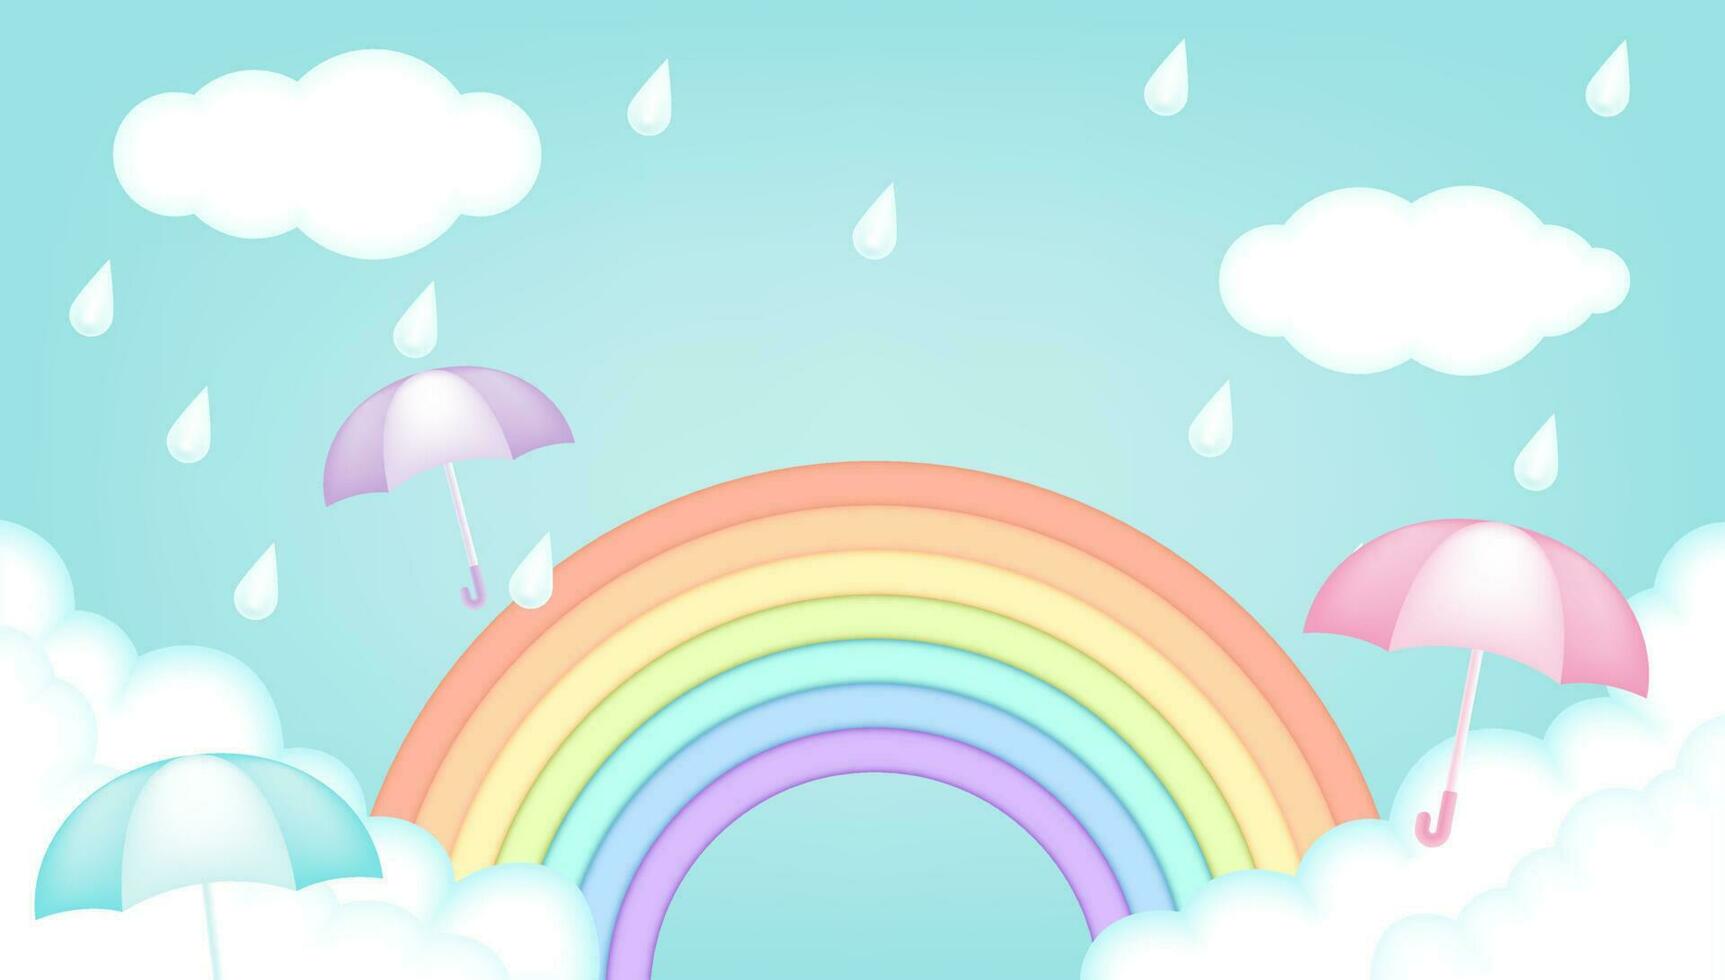 brillant et coloré des gamins vecteur 3d illustration de une pluvieux journée avec une des nuages, arc-en-ciel, gouttes de pluie, parapluies. pour publicité, temps bannières, coupons, dépliants, affiches, promotions et mousson saison